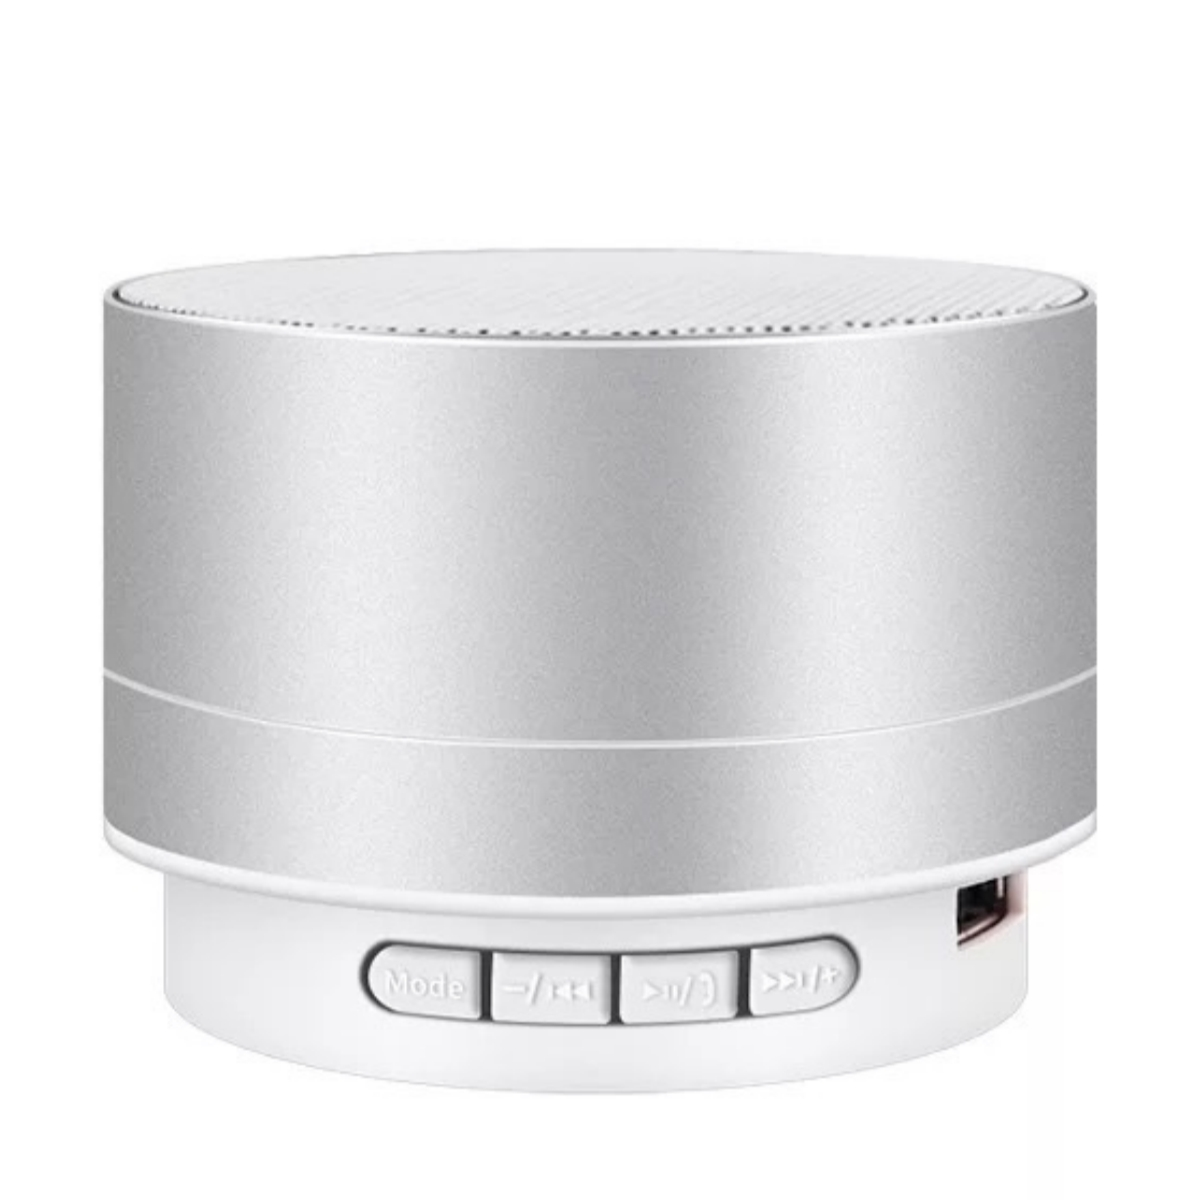 SHAOKE Bluetooth-Lautsprecher - Kompakt Hochwertig Tragbar Lautsprecher, Bluetooth Silber 360° Surround-Sound